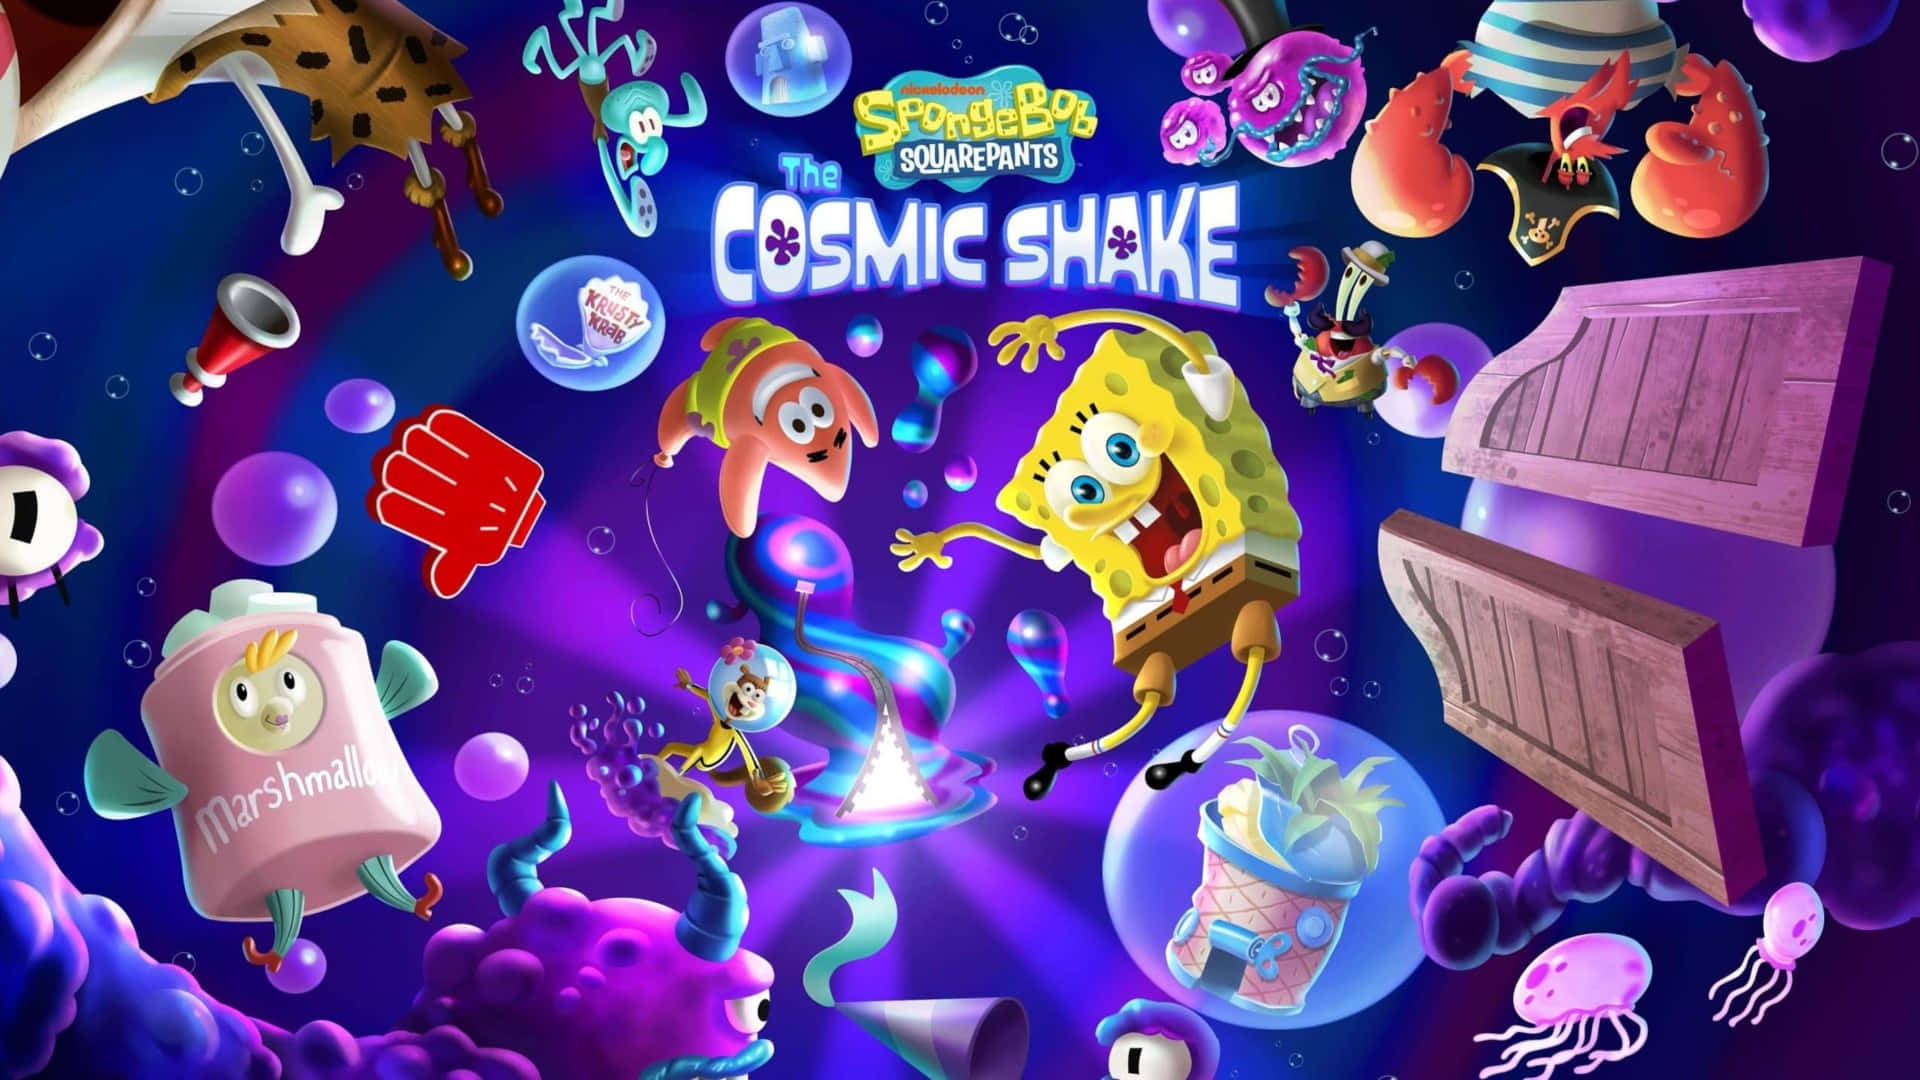 Spongebob Squarepants Ice Cream Shake Screenshot Background